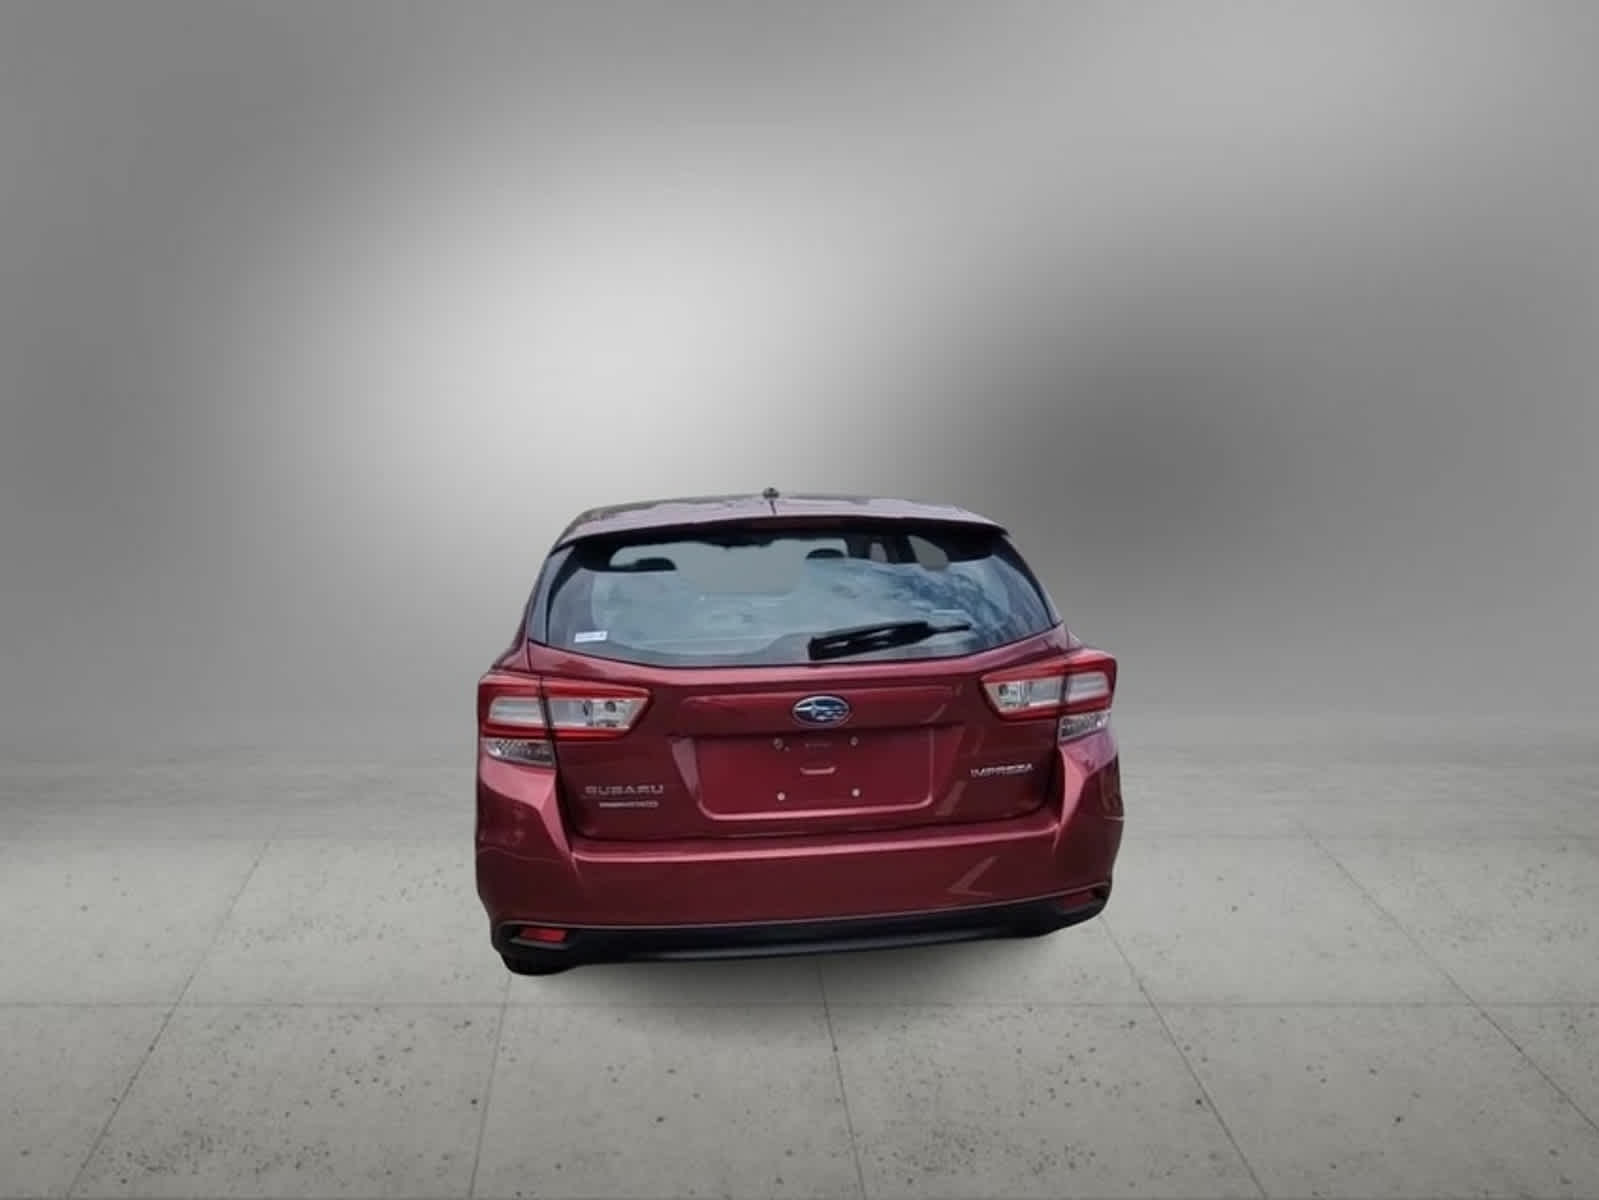 2019 Subaru Impreza 2.0I 6